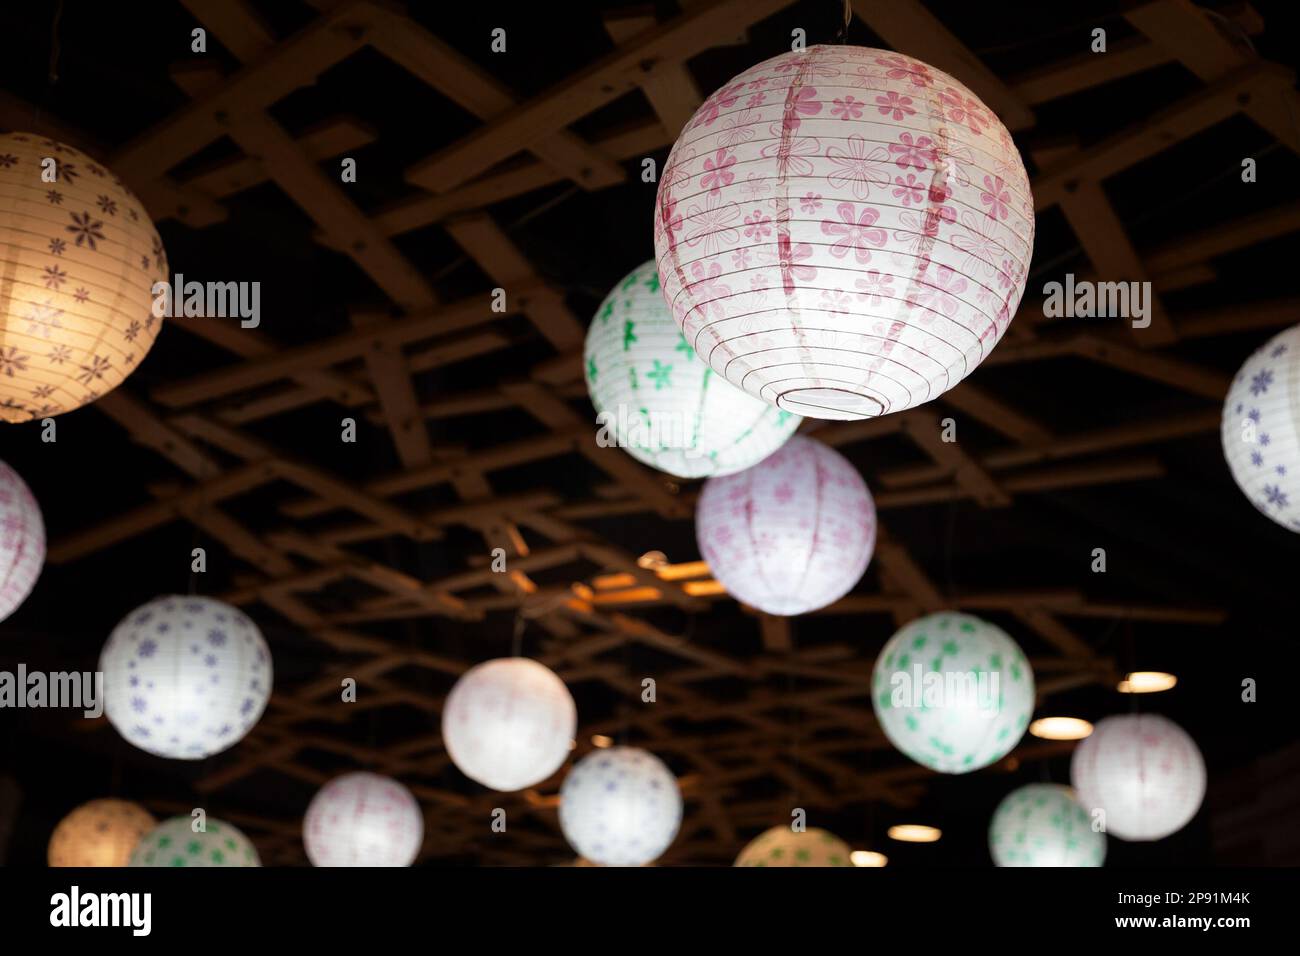 Viele weiße Runde chinesische Papierlaternen hängen in der Dunkelheit. Hypochondrischen Lampen Beleuchtung in der Nacht Stockfoto